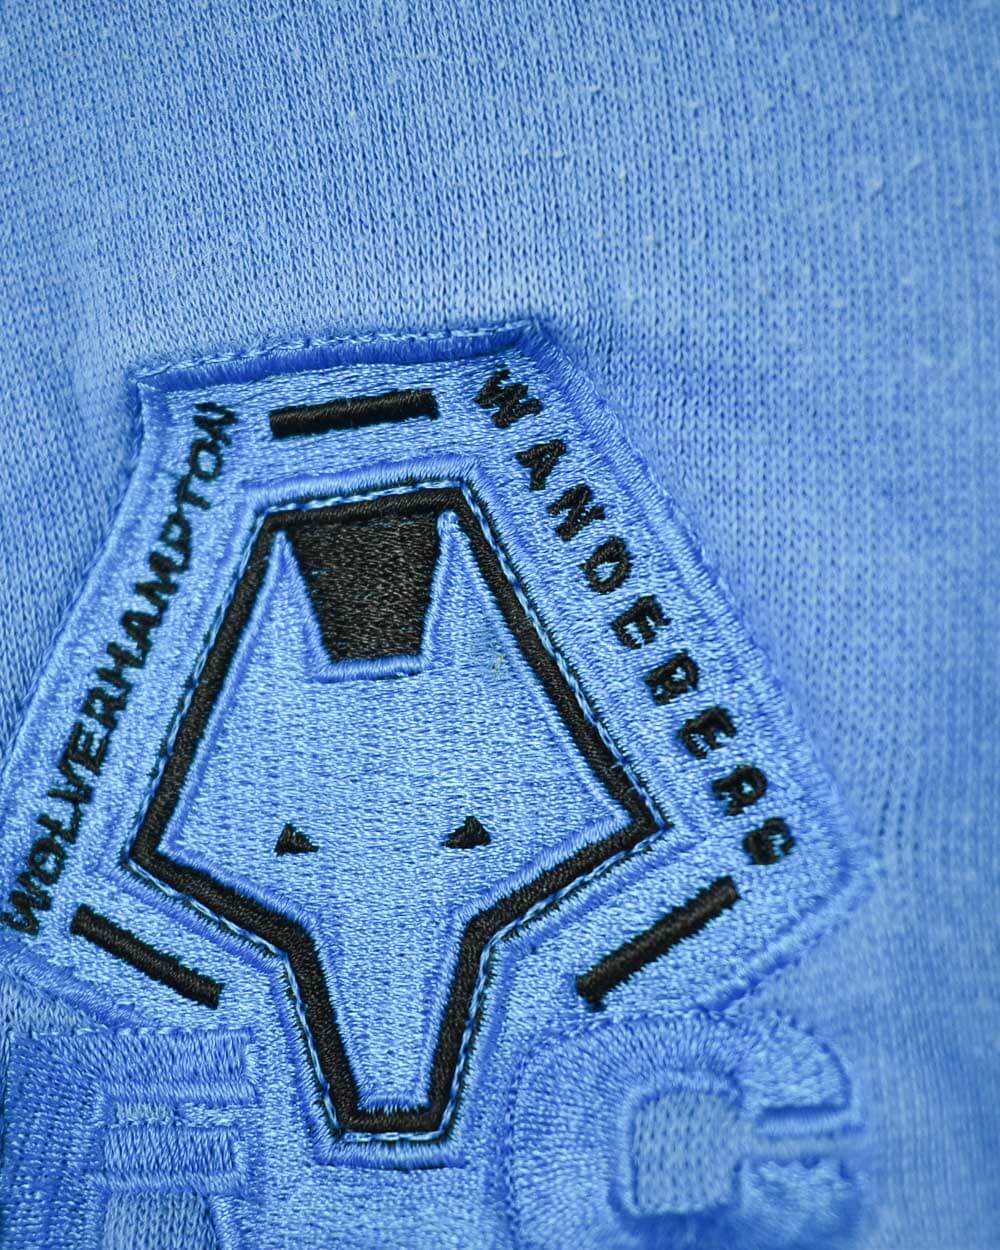 Blue Puma King Wolverhampton FC Sweatshirt - X-Small